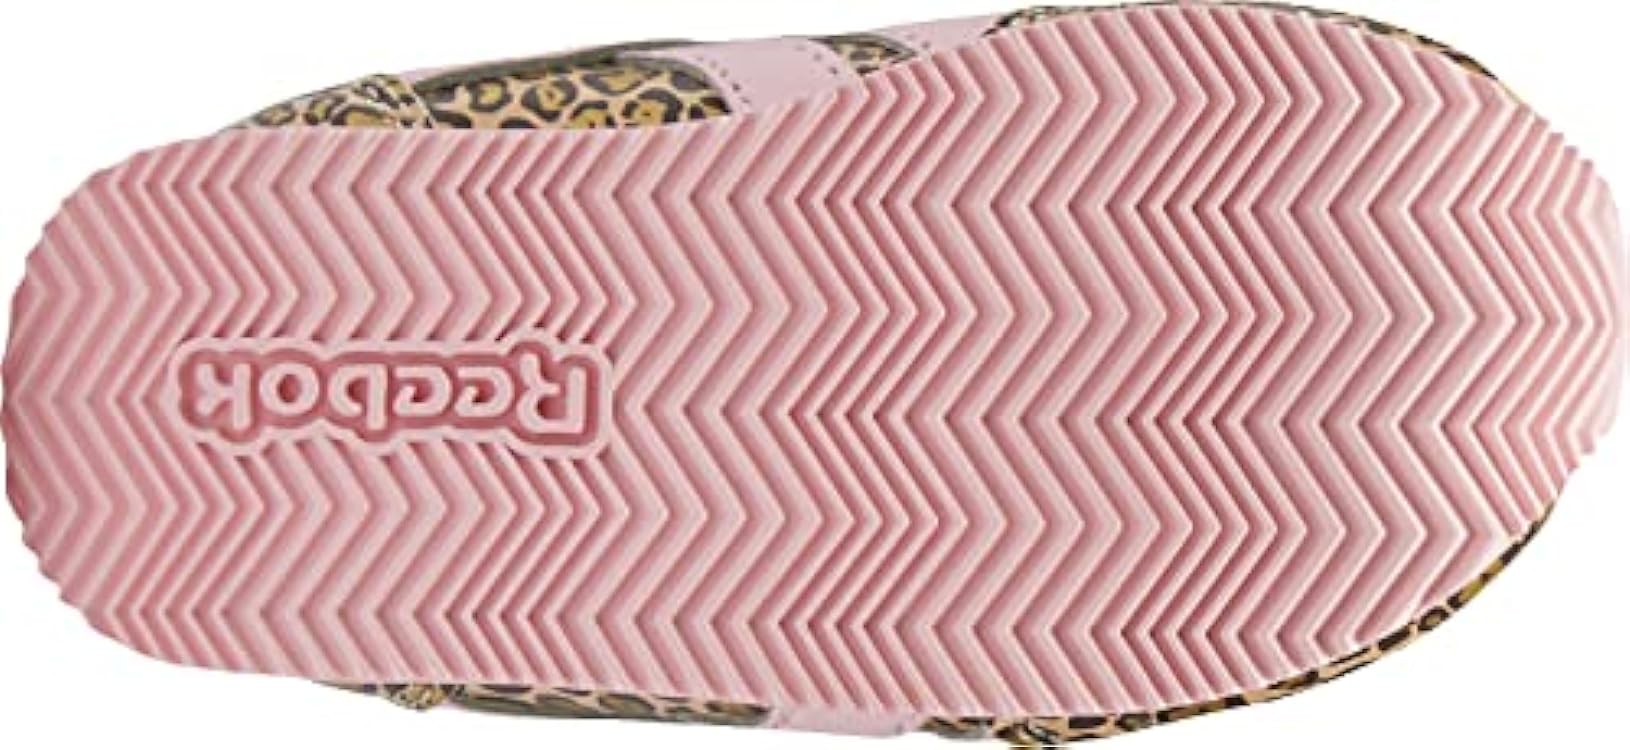 Reebok Royal Cljog 2KC, Sneaker, Gold Met./Rich Copper/Pink Glow, 26.5 EU 953163798